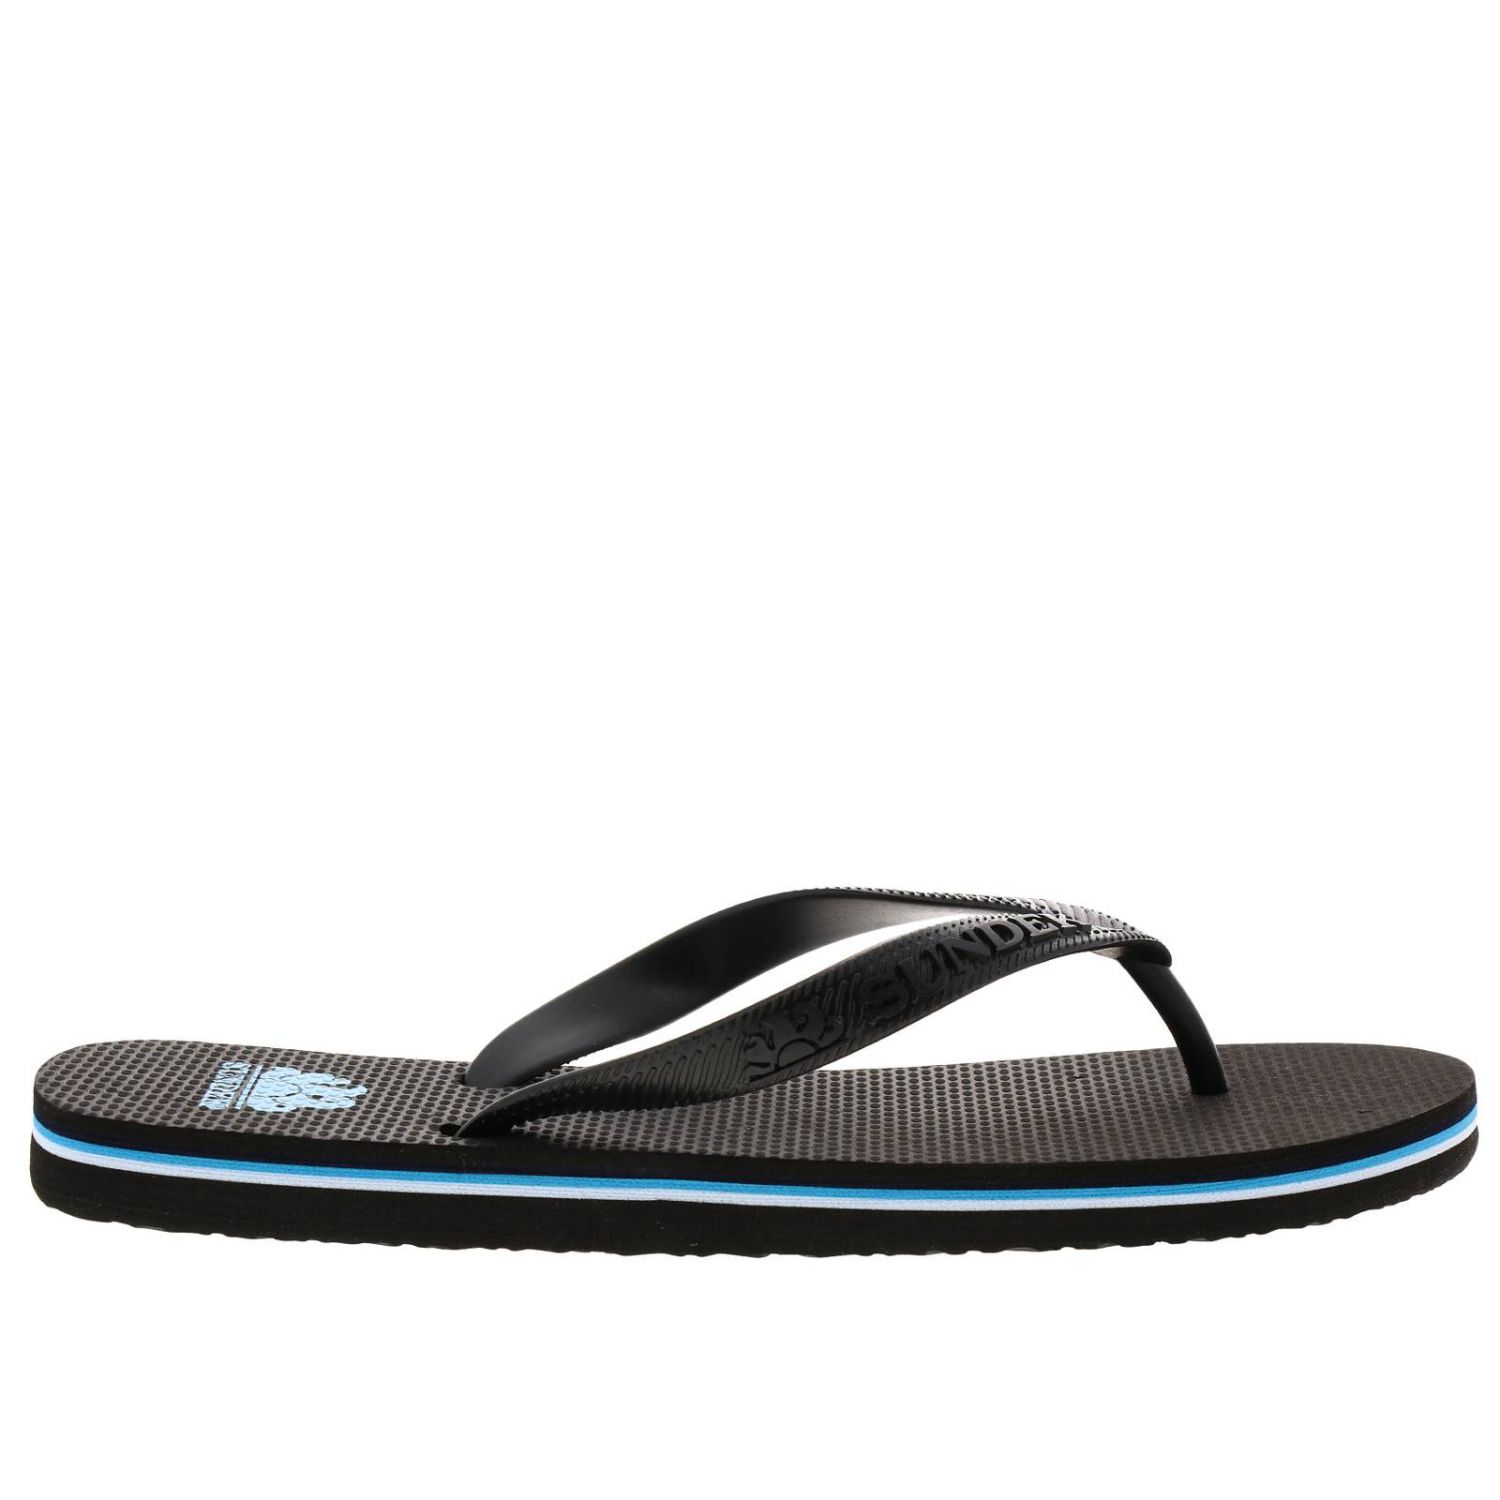 Sundek Outlet: Sandals men - Black | Sandals Sundek AM443ASEL000 GIGLIO.COM